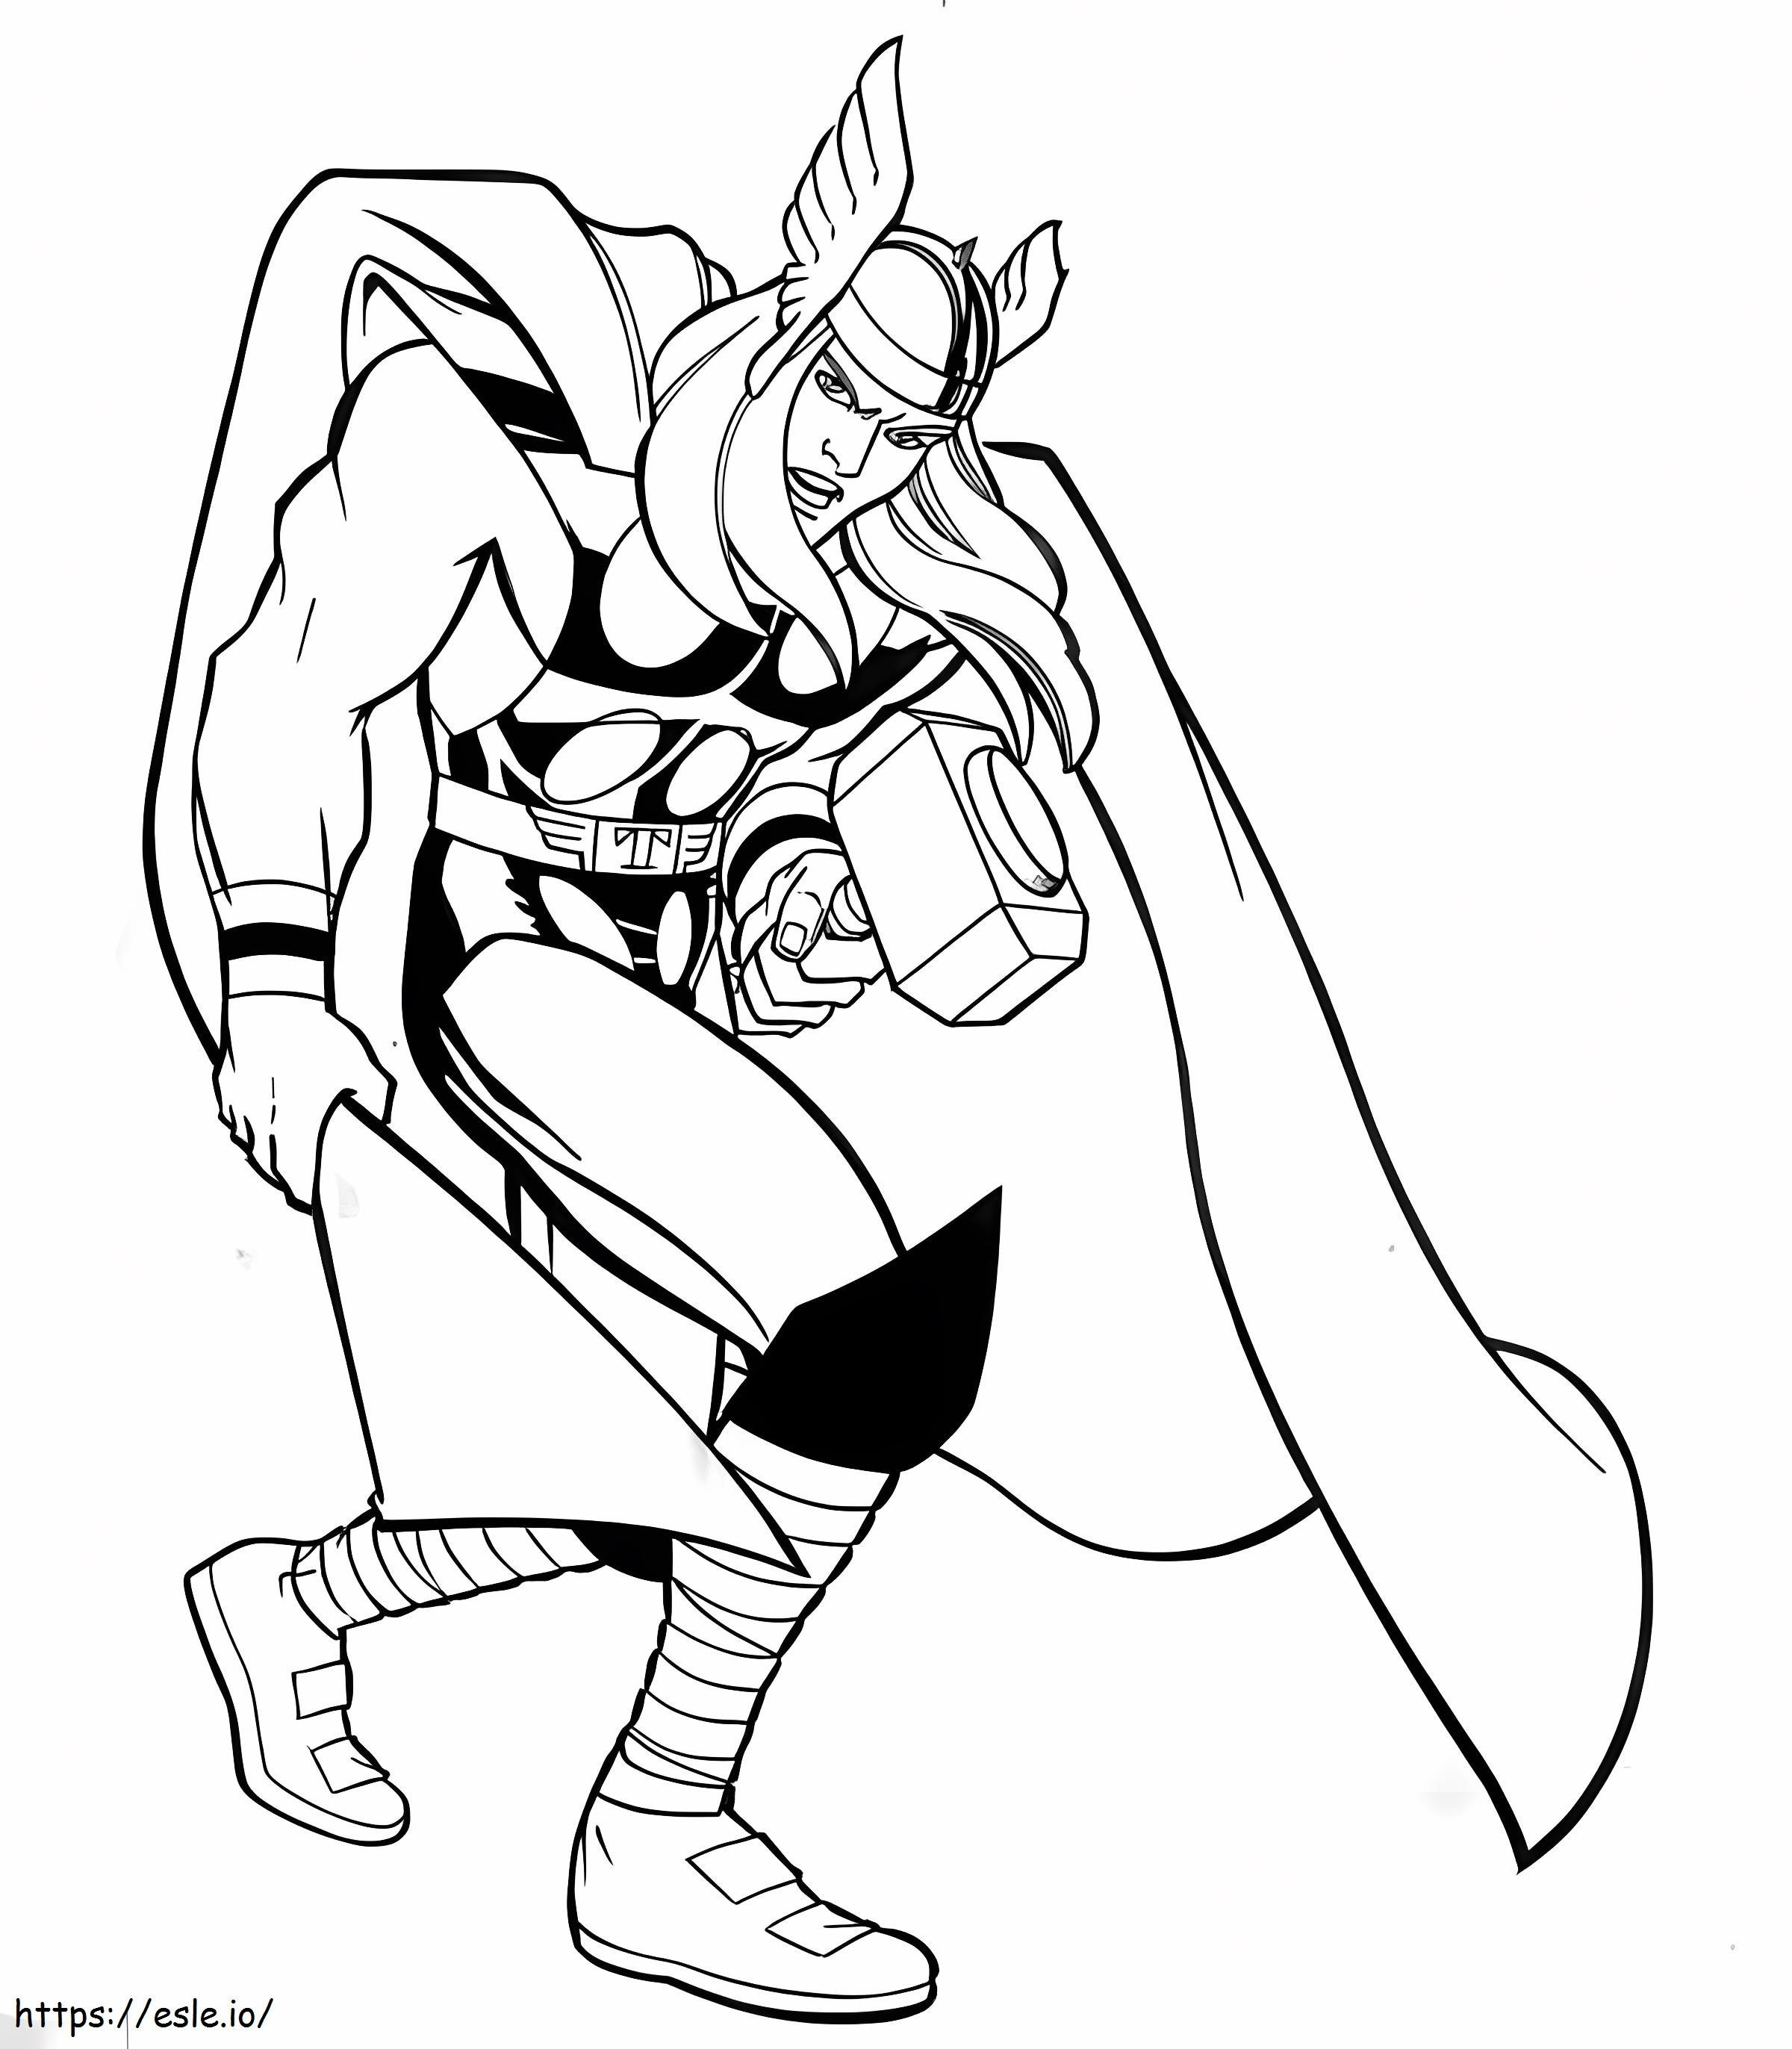 Desen animat Thor cu ciocan de colorat